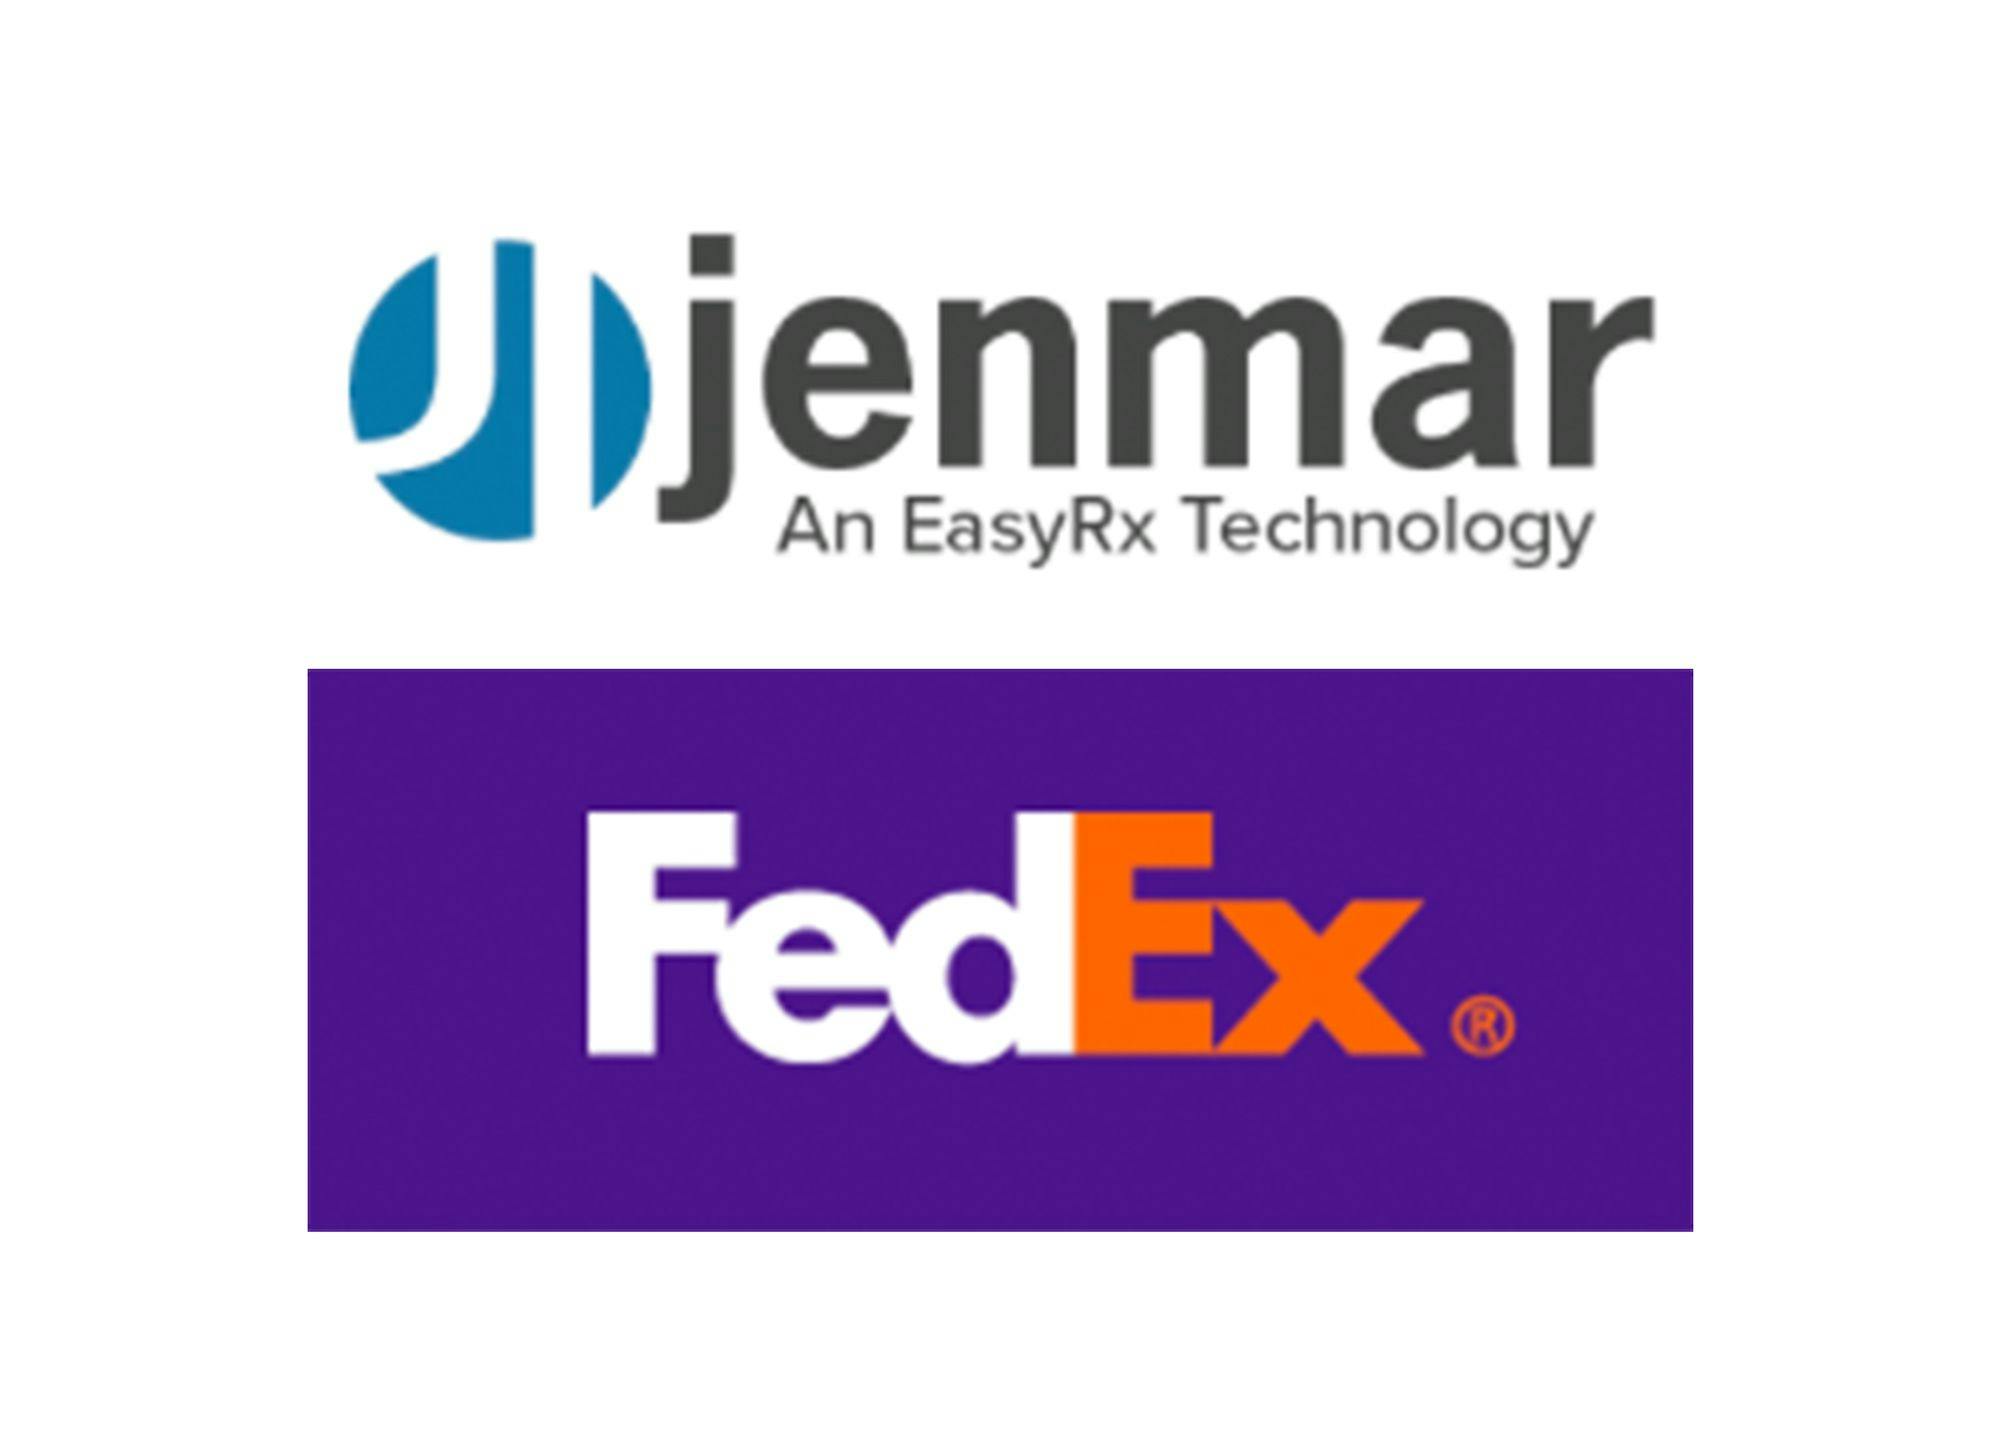 Jenmar VisualDLP Announces FedEx Integration